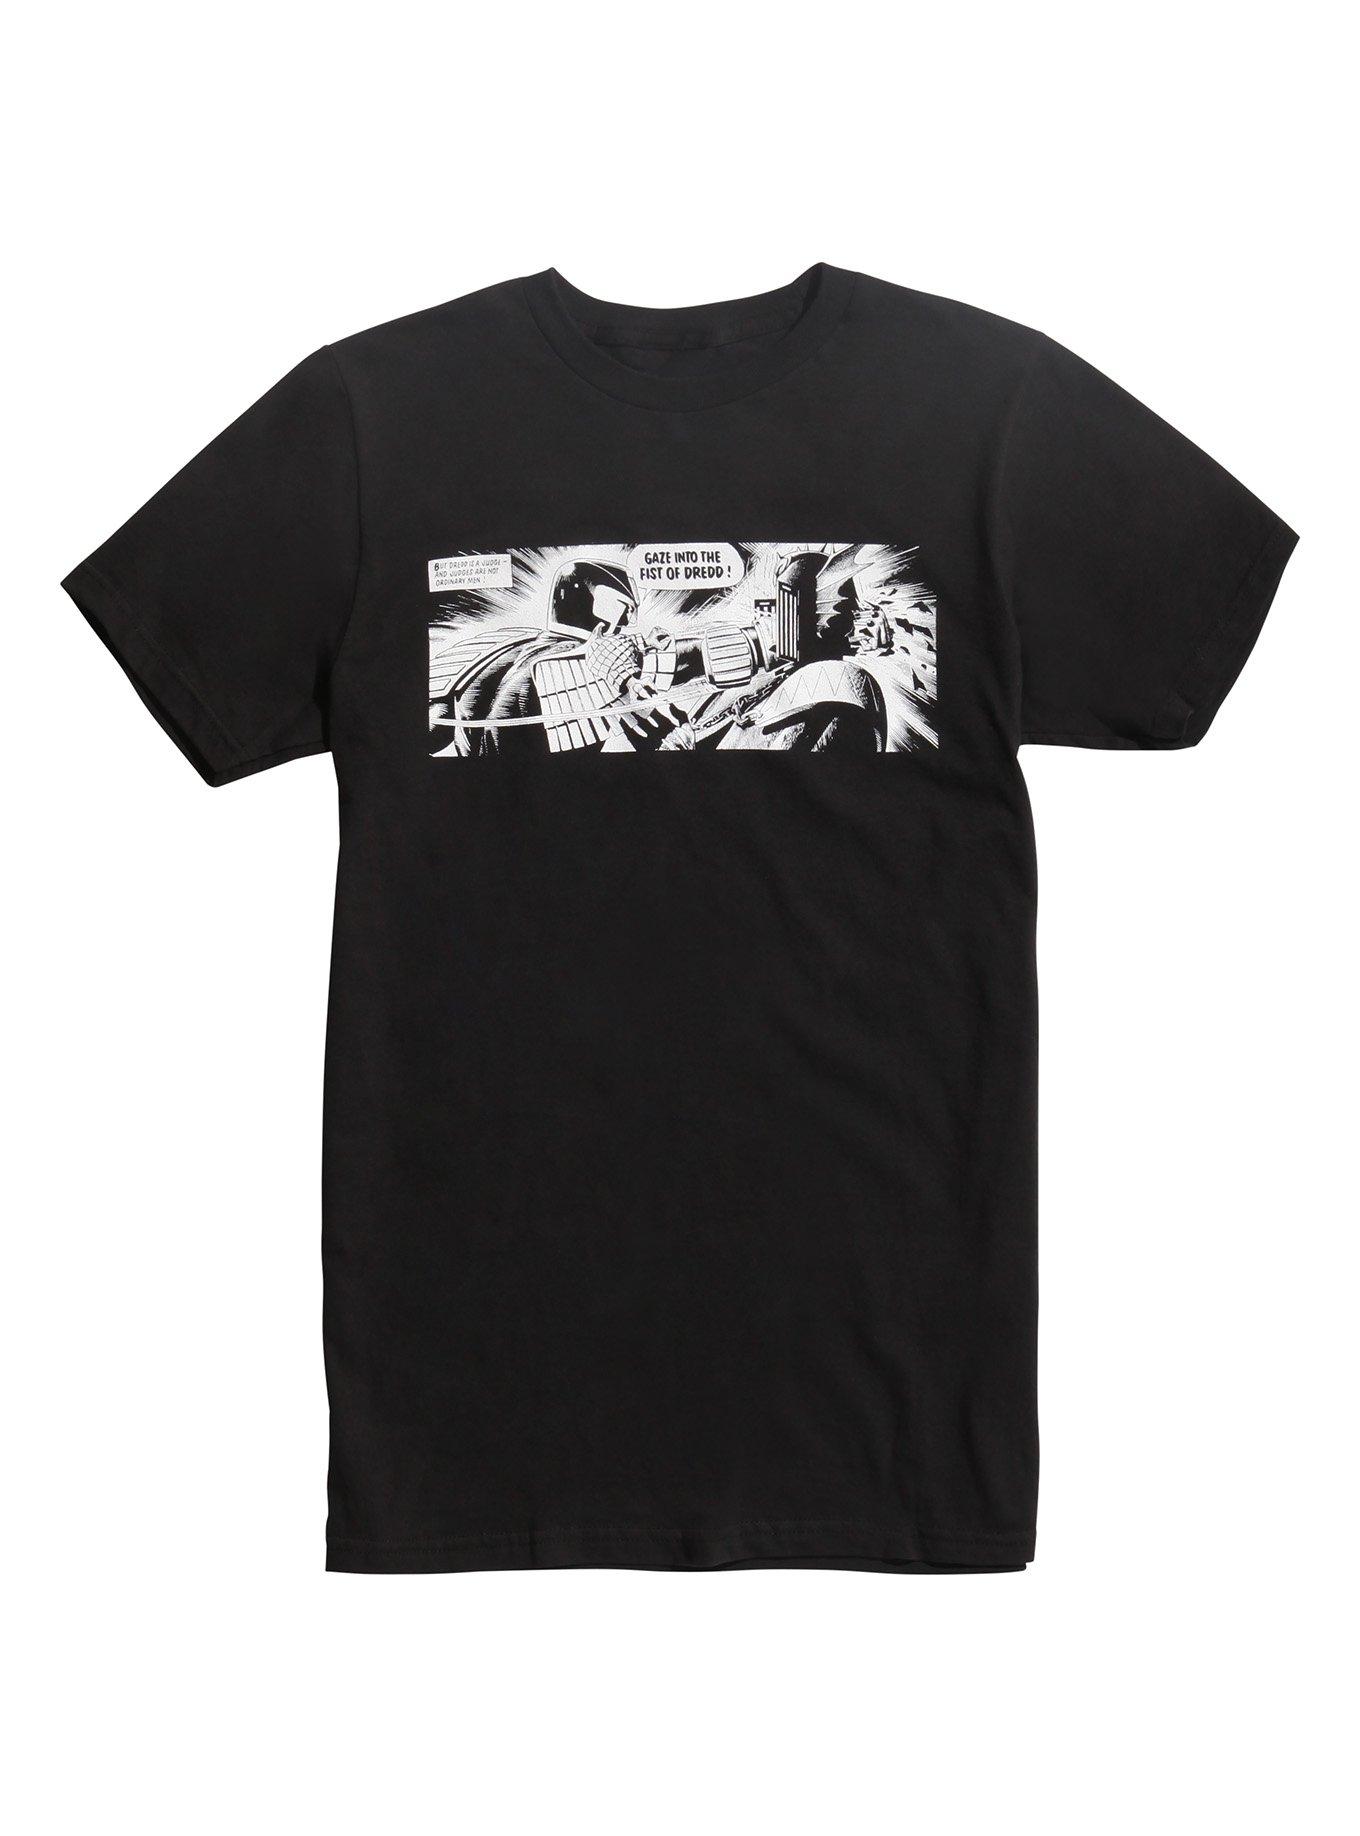 2000 AD Judge Dredd Fist Of Dredd T-Shirt | Hot Topic